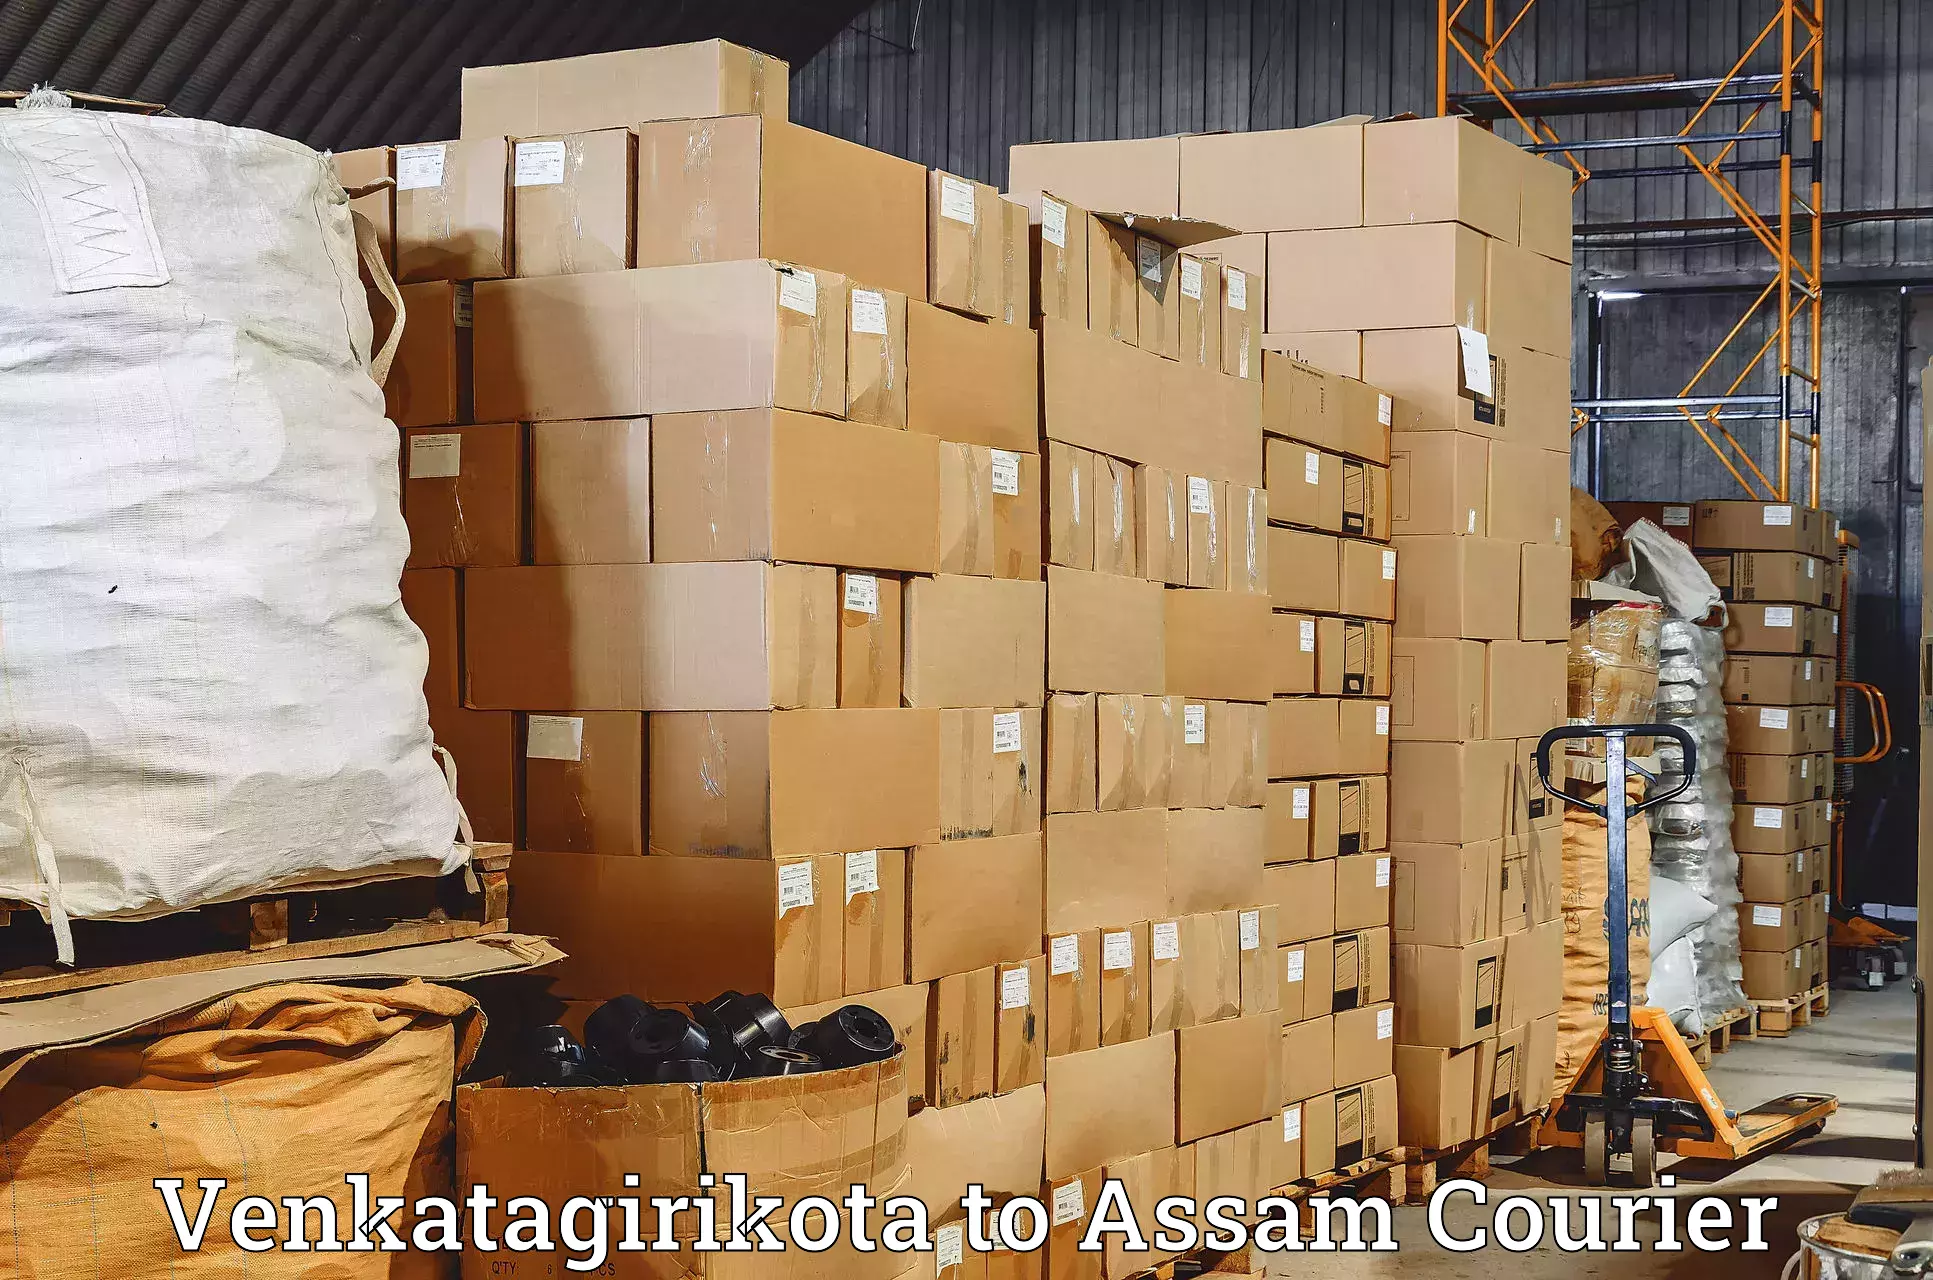 Reliable courier services Venkatagirikota to Silapathar